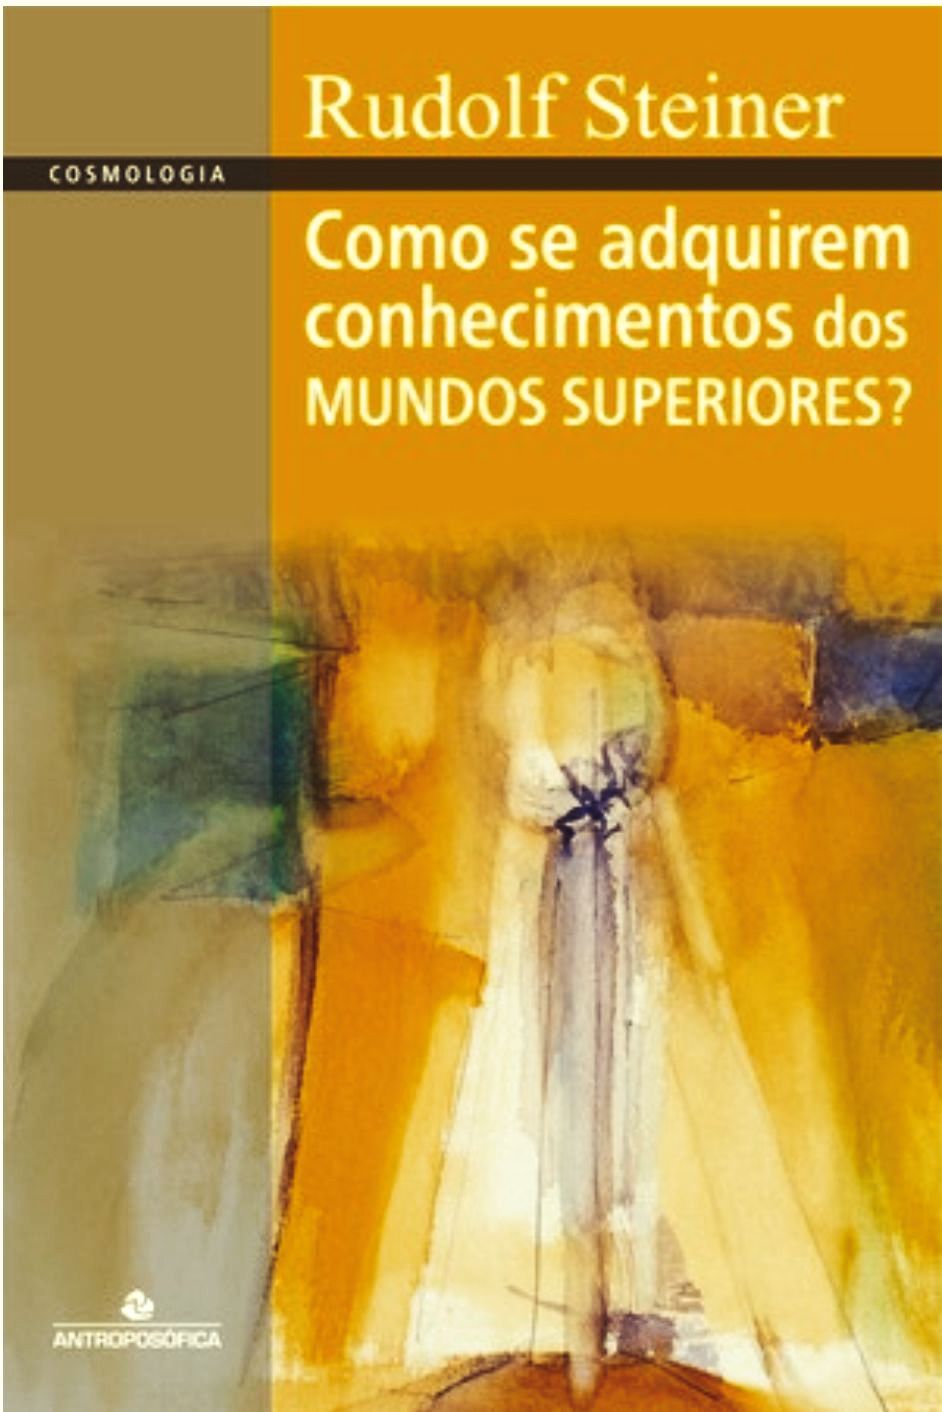 COMO SE ADQUIREM CONHECIMENTOS DOS MUNDOS SUPERIORES? - Rudolf Steiner